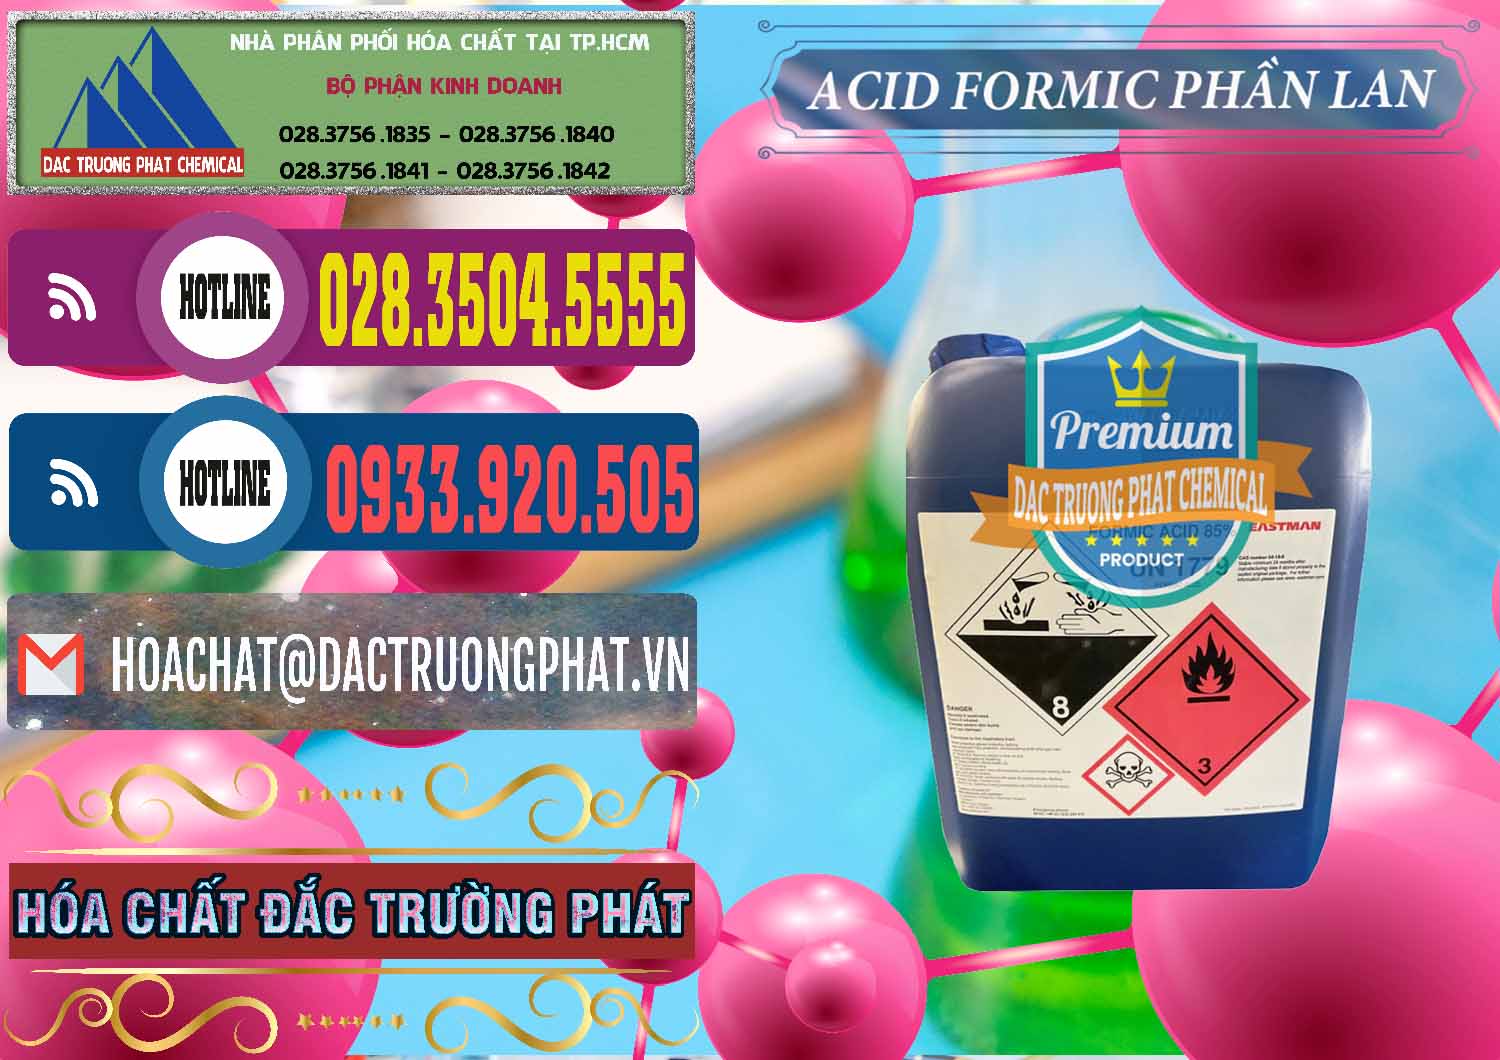 Cty cung cấp và bán Acid Formic - Axit Formic Phần Lan Finland - 0376 - Nơi nhập khẩu và cung cấp hóa chất tại TP.HCM - muabanhoachat.com.vn